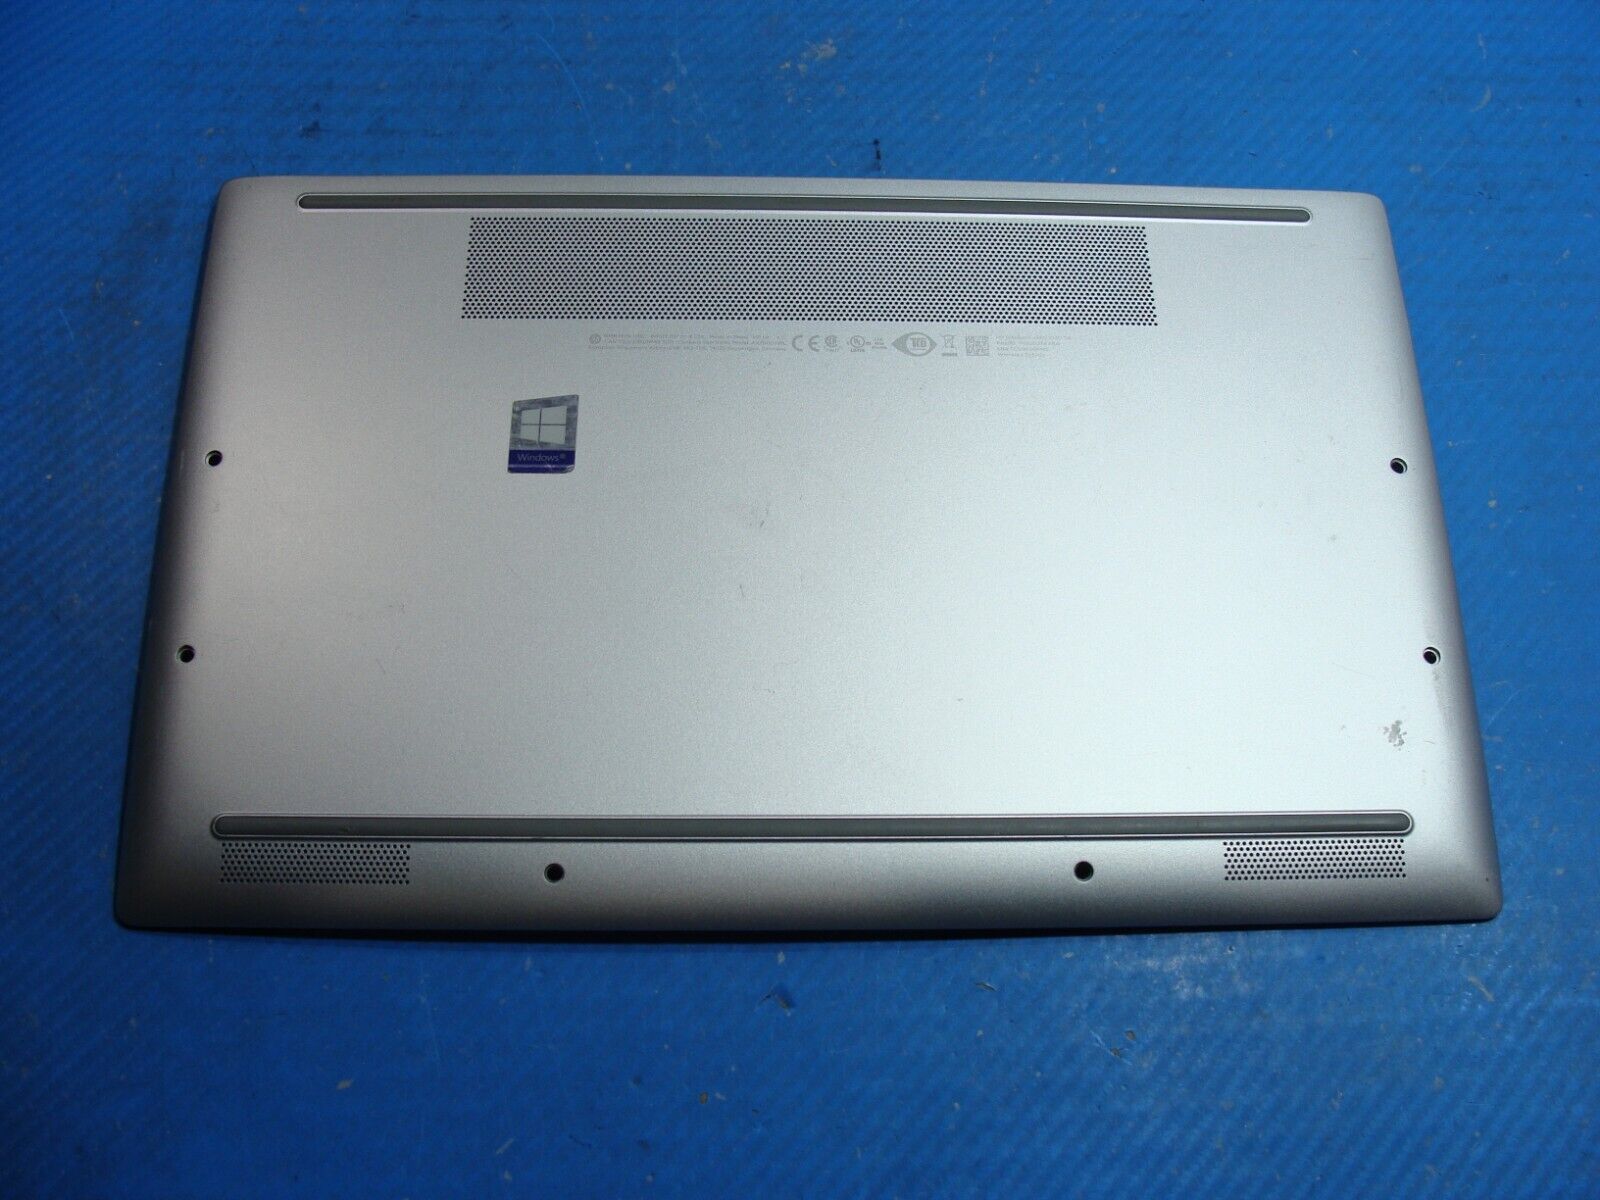 HP EliteBook x360 1040 G6 14